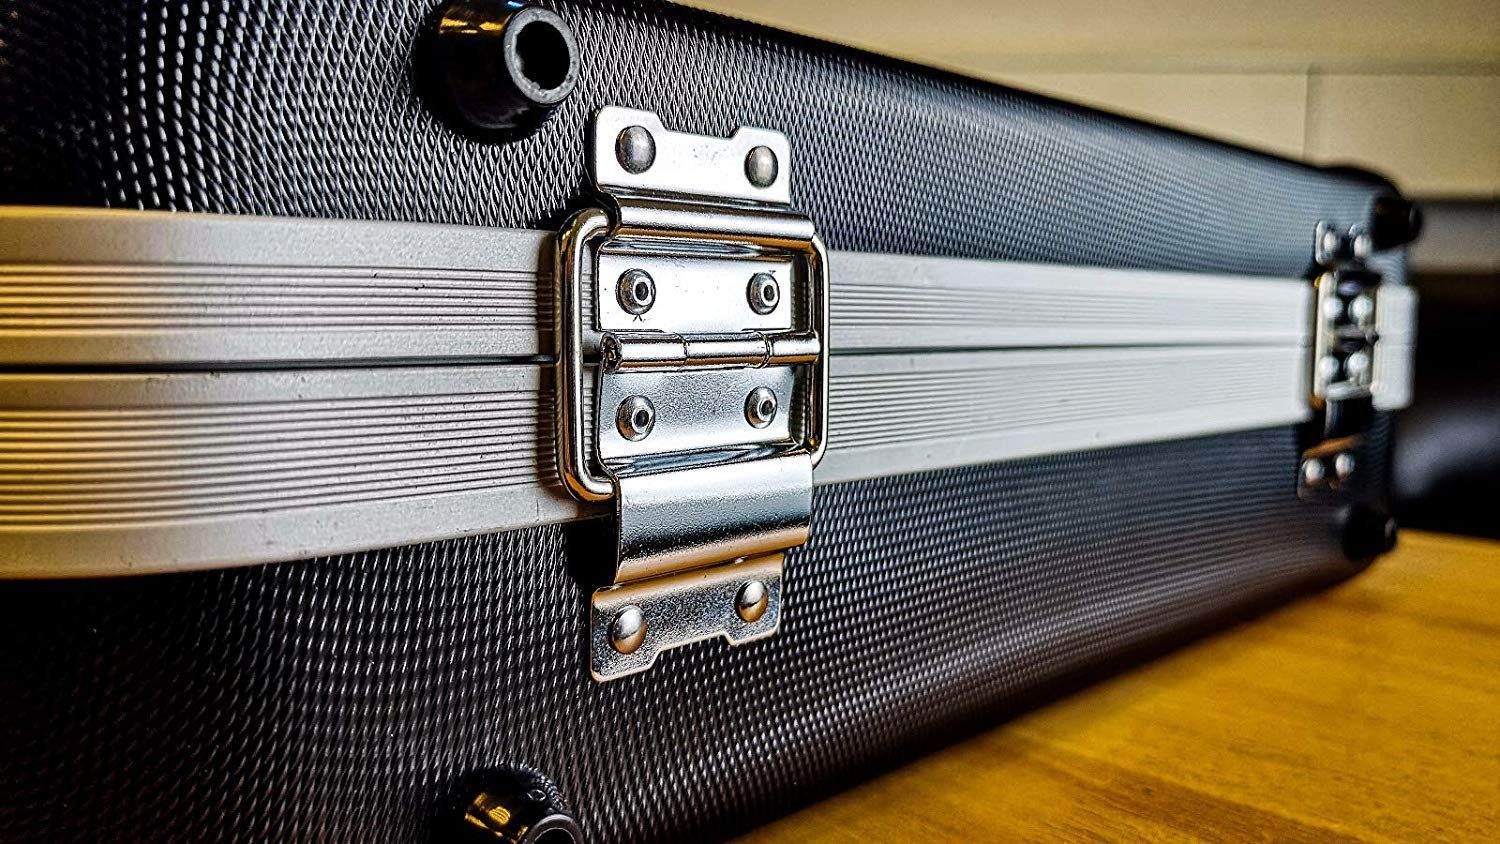 GORANDO Werkzeugkoffer Universal ABS Transport-Koffer mit Schaumstoff Würfelschaum Polsterung